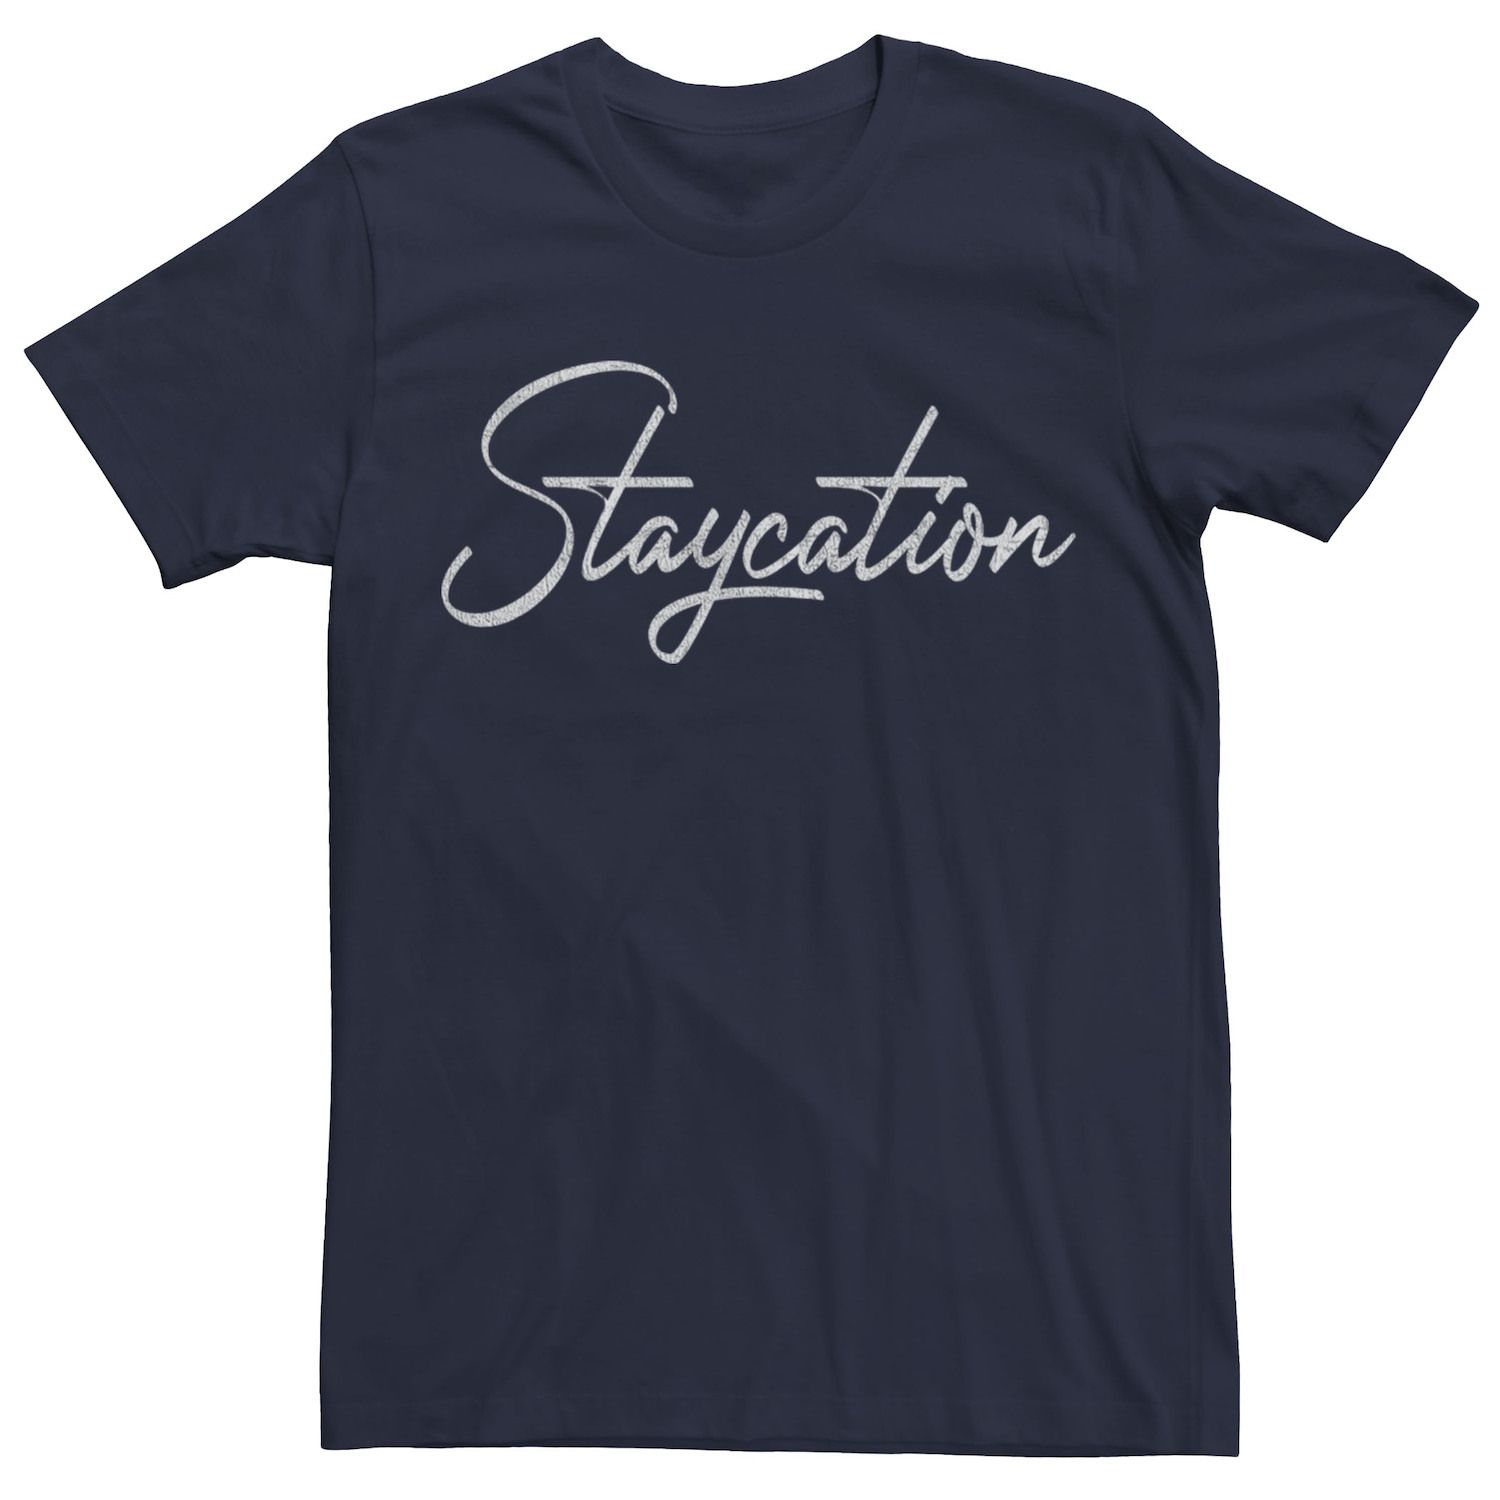 Мужская футболка с текстом в стиле каллиграфии Staycation Licensed Character